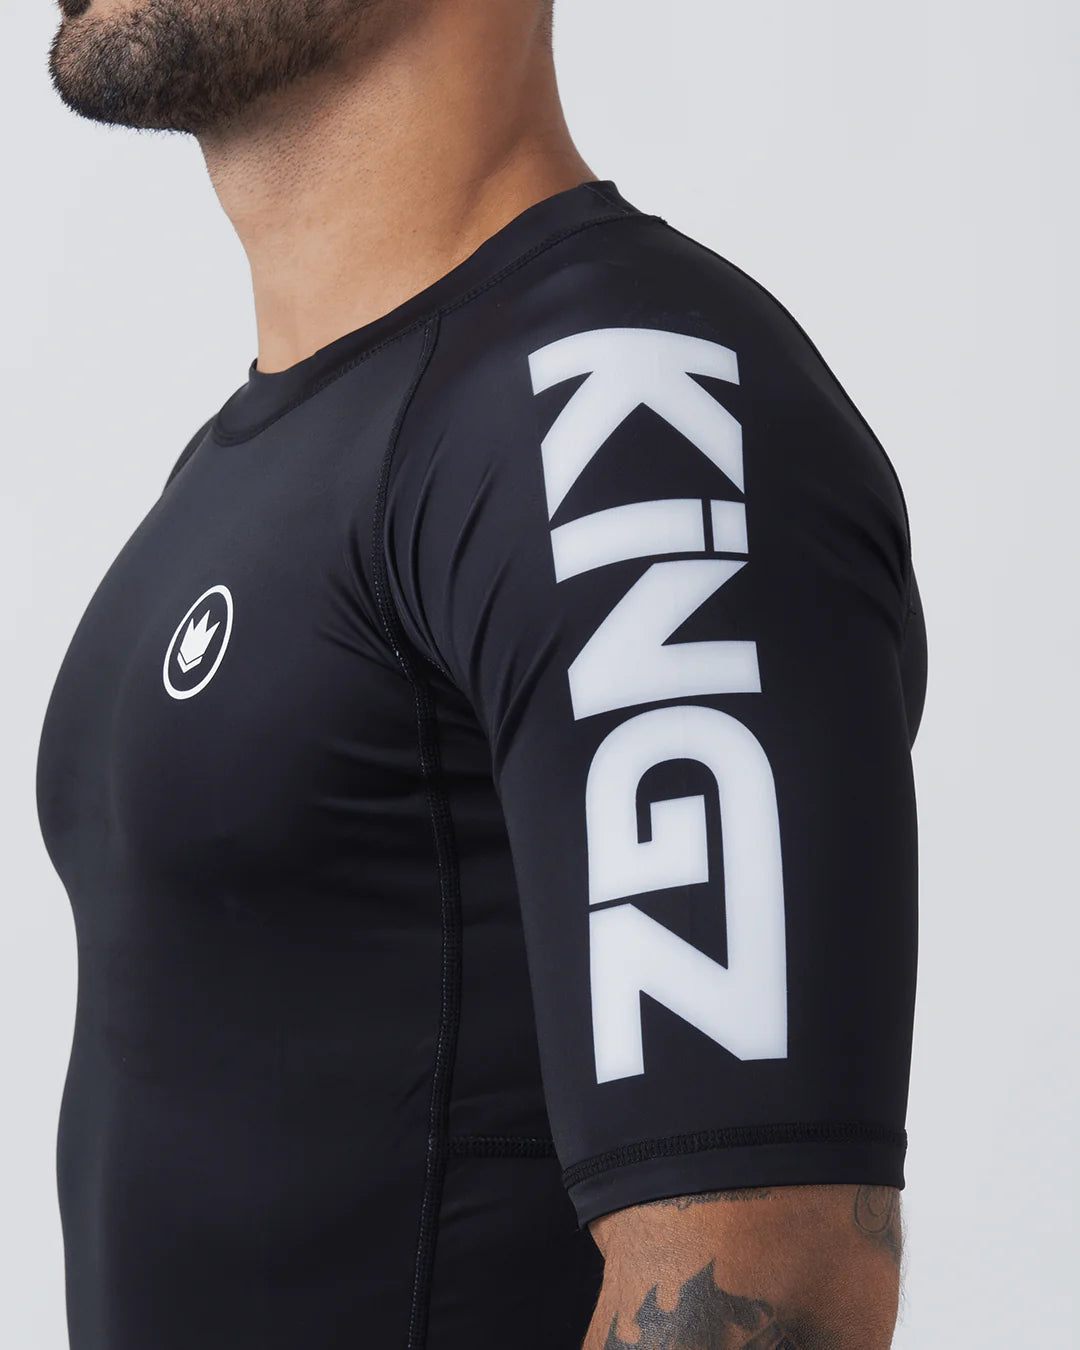 Kingz Kore V2 Short Sleeve Rashguard – Svart